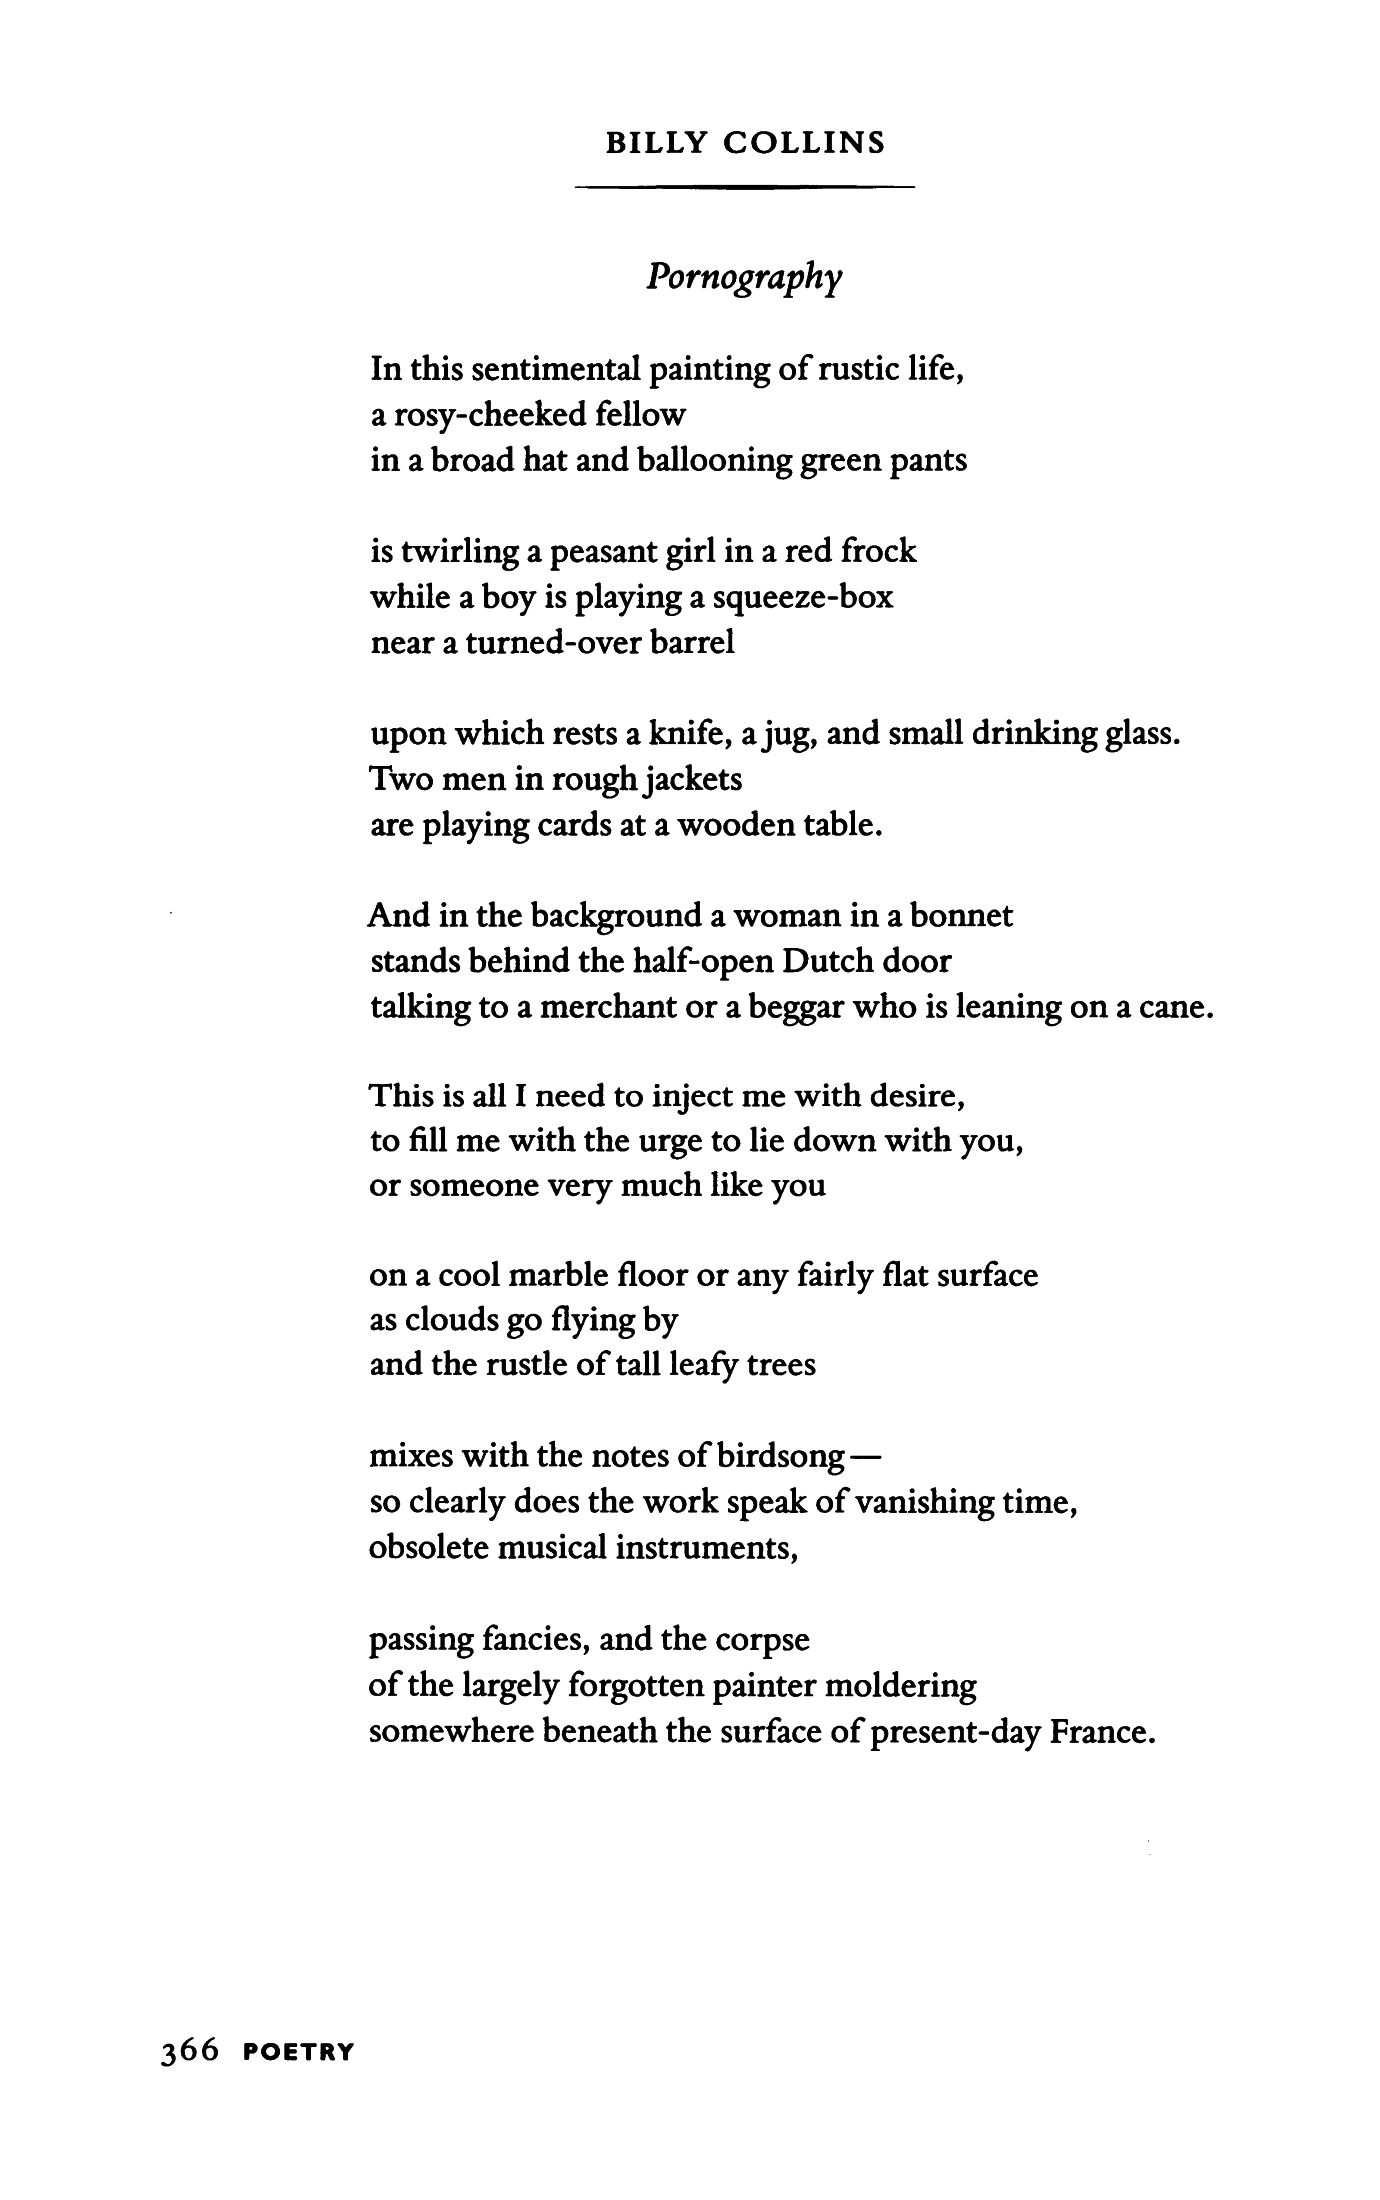 Porn poem for teen